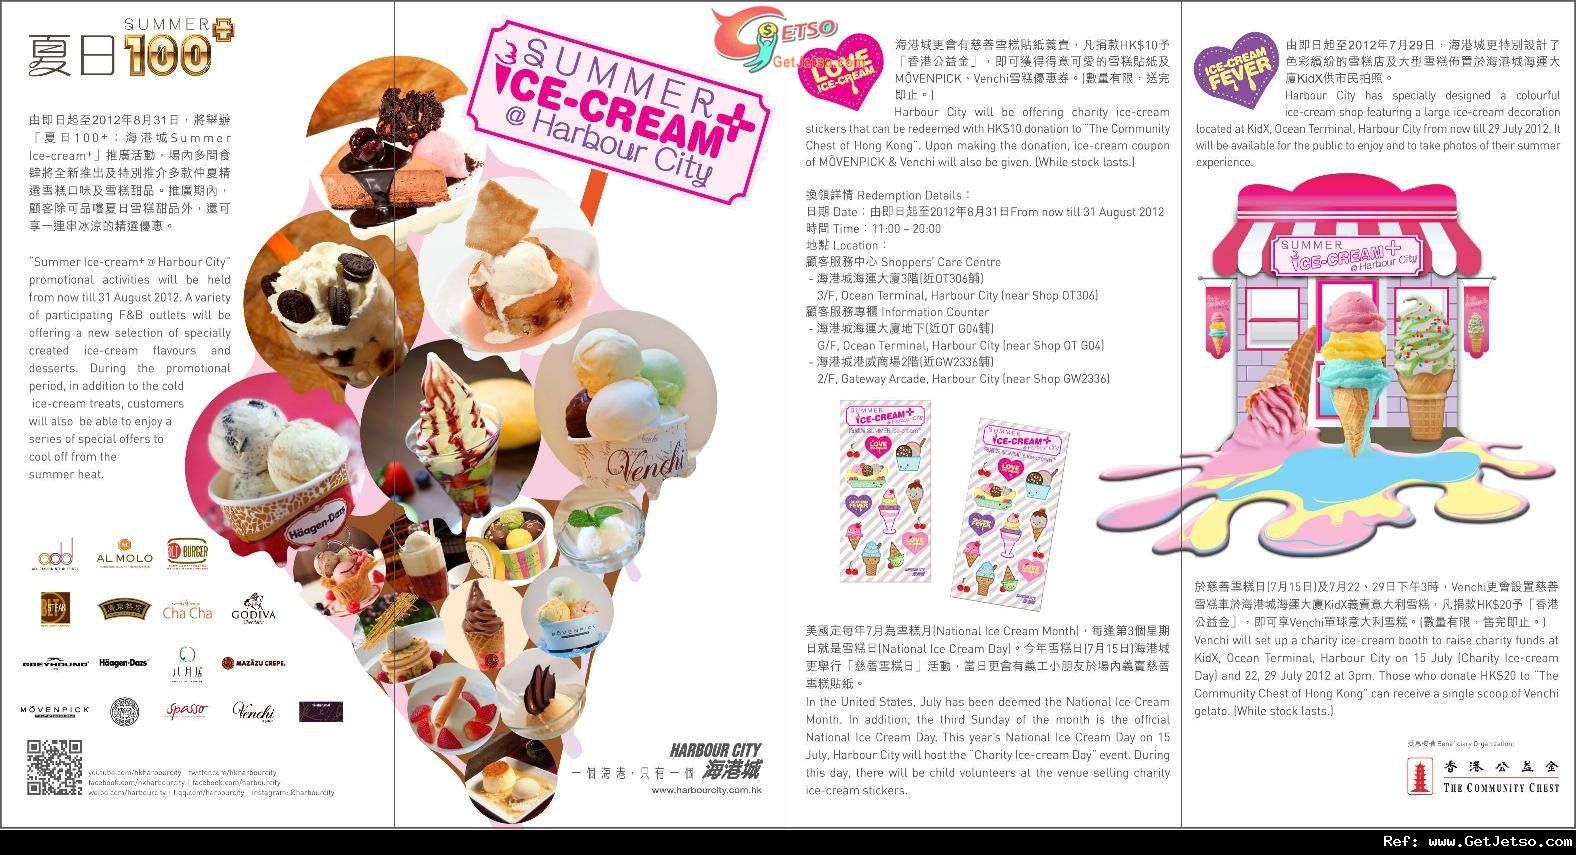 「夏日100+：海港城Summer Ice-cream+」推廣優惠(至12年8月31日)圖片1